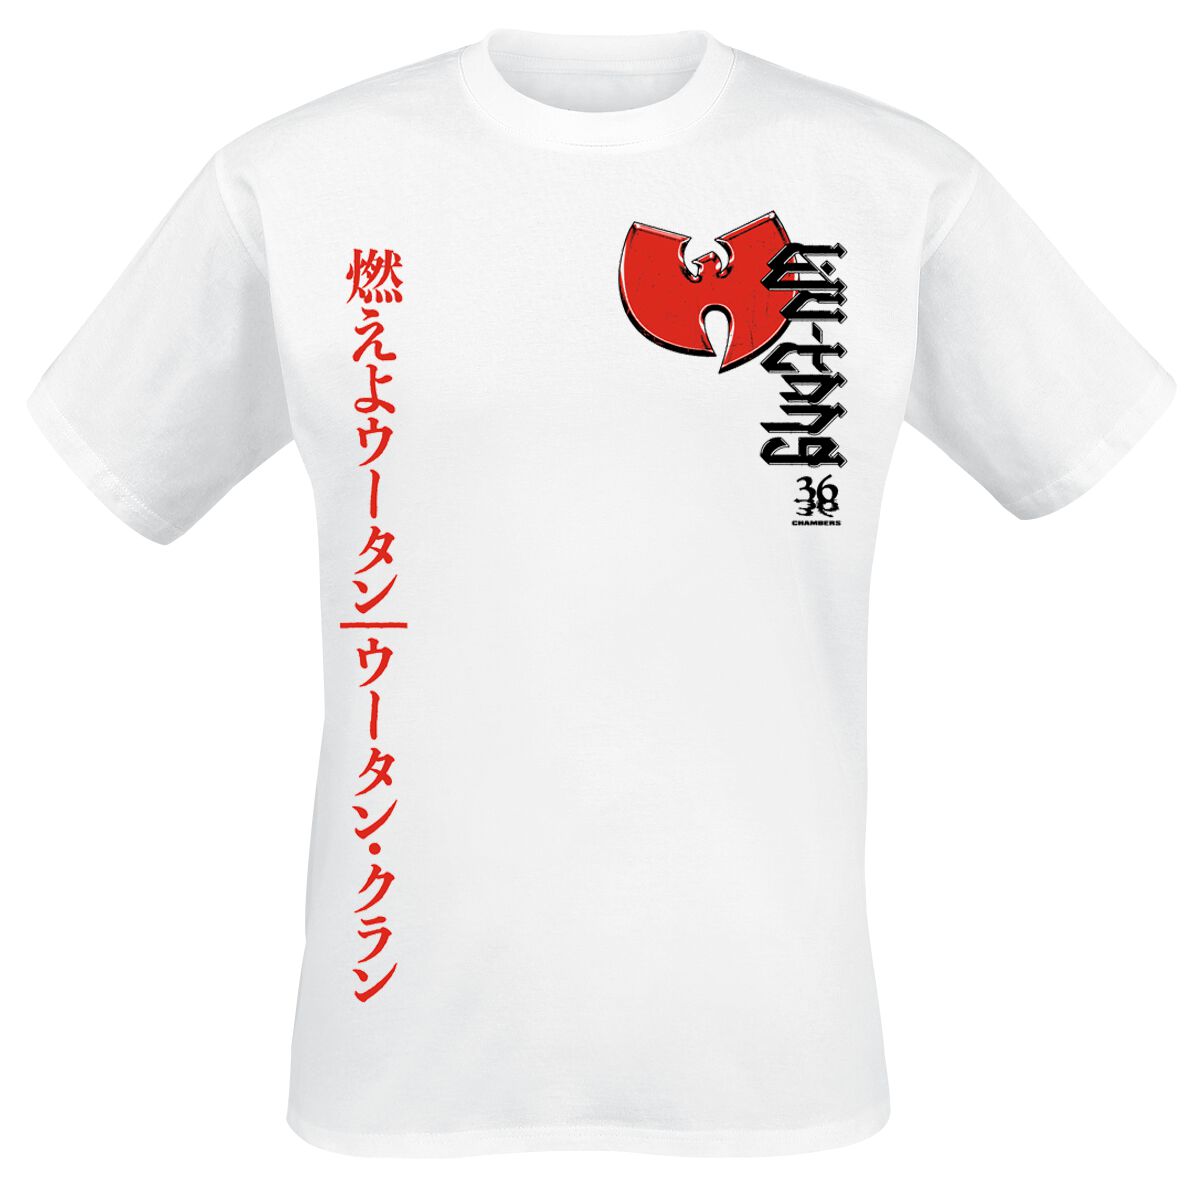 Wu-Tang Clan T-Shirt - Swords - S bis XXL - für Männer - Größe S - weiß  - Lizenziertes Merchandise!